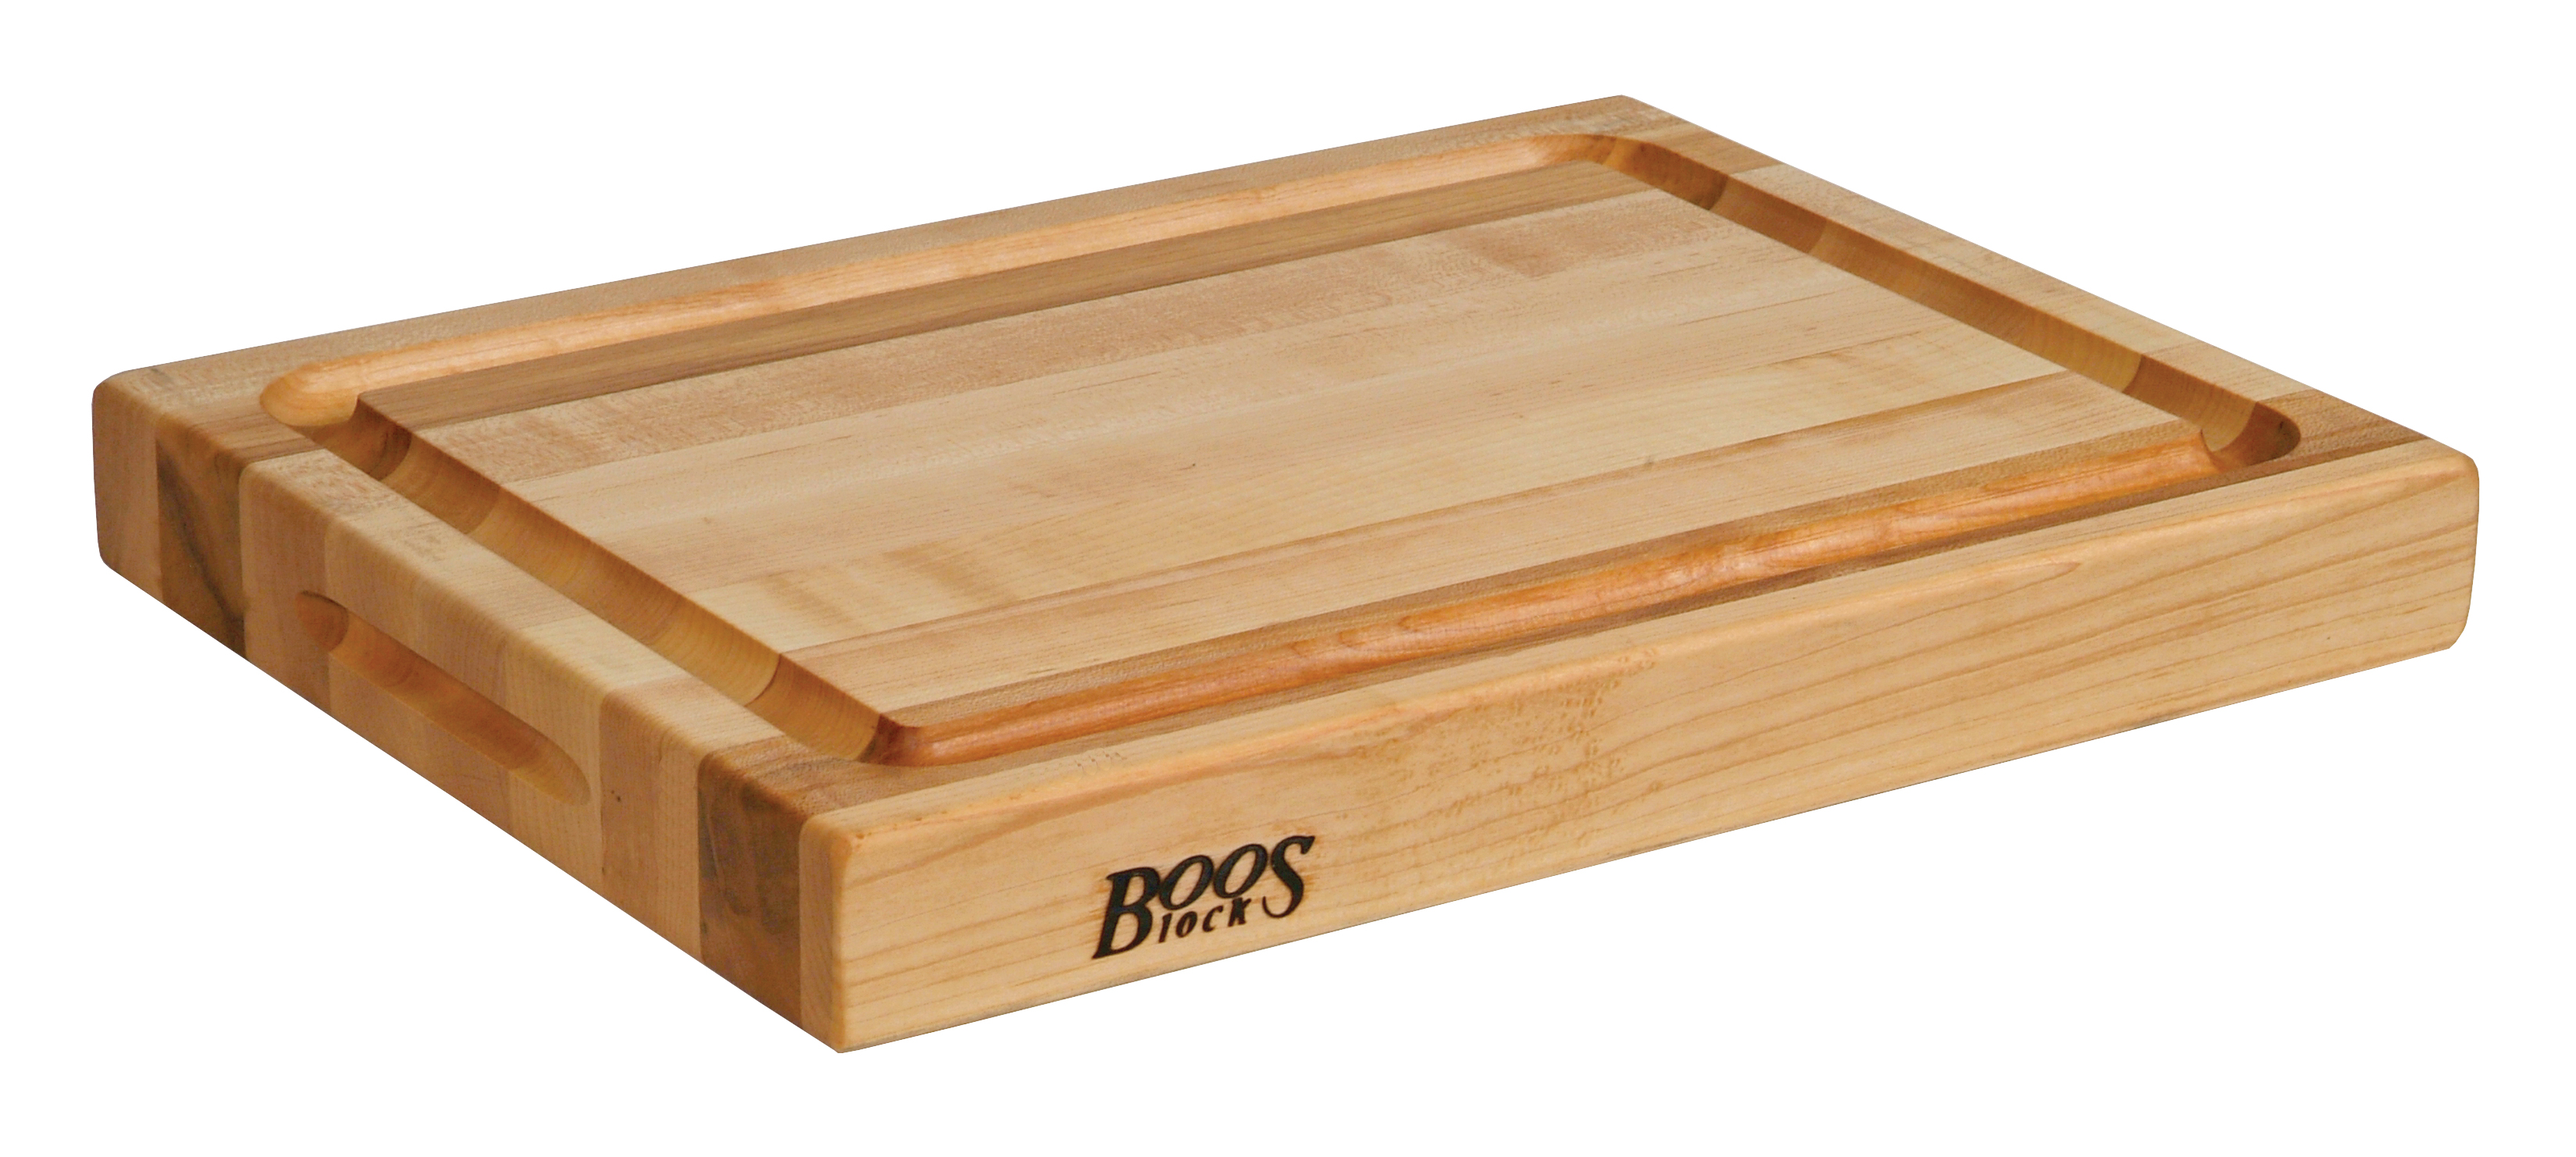 Boos Blocks Pro Chef-Groove Schneidebrett 51x38x6 cm aus Ahornholz mit Saftrille